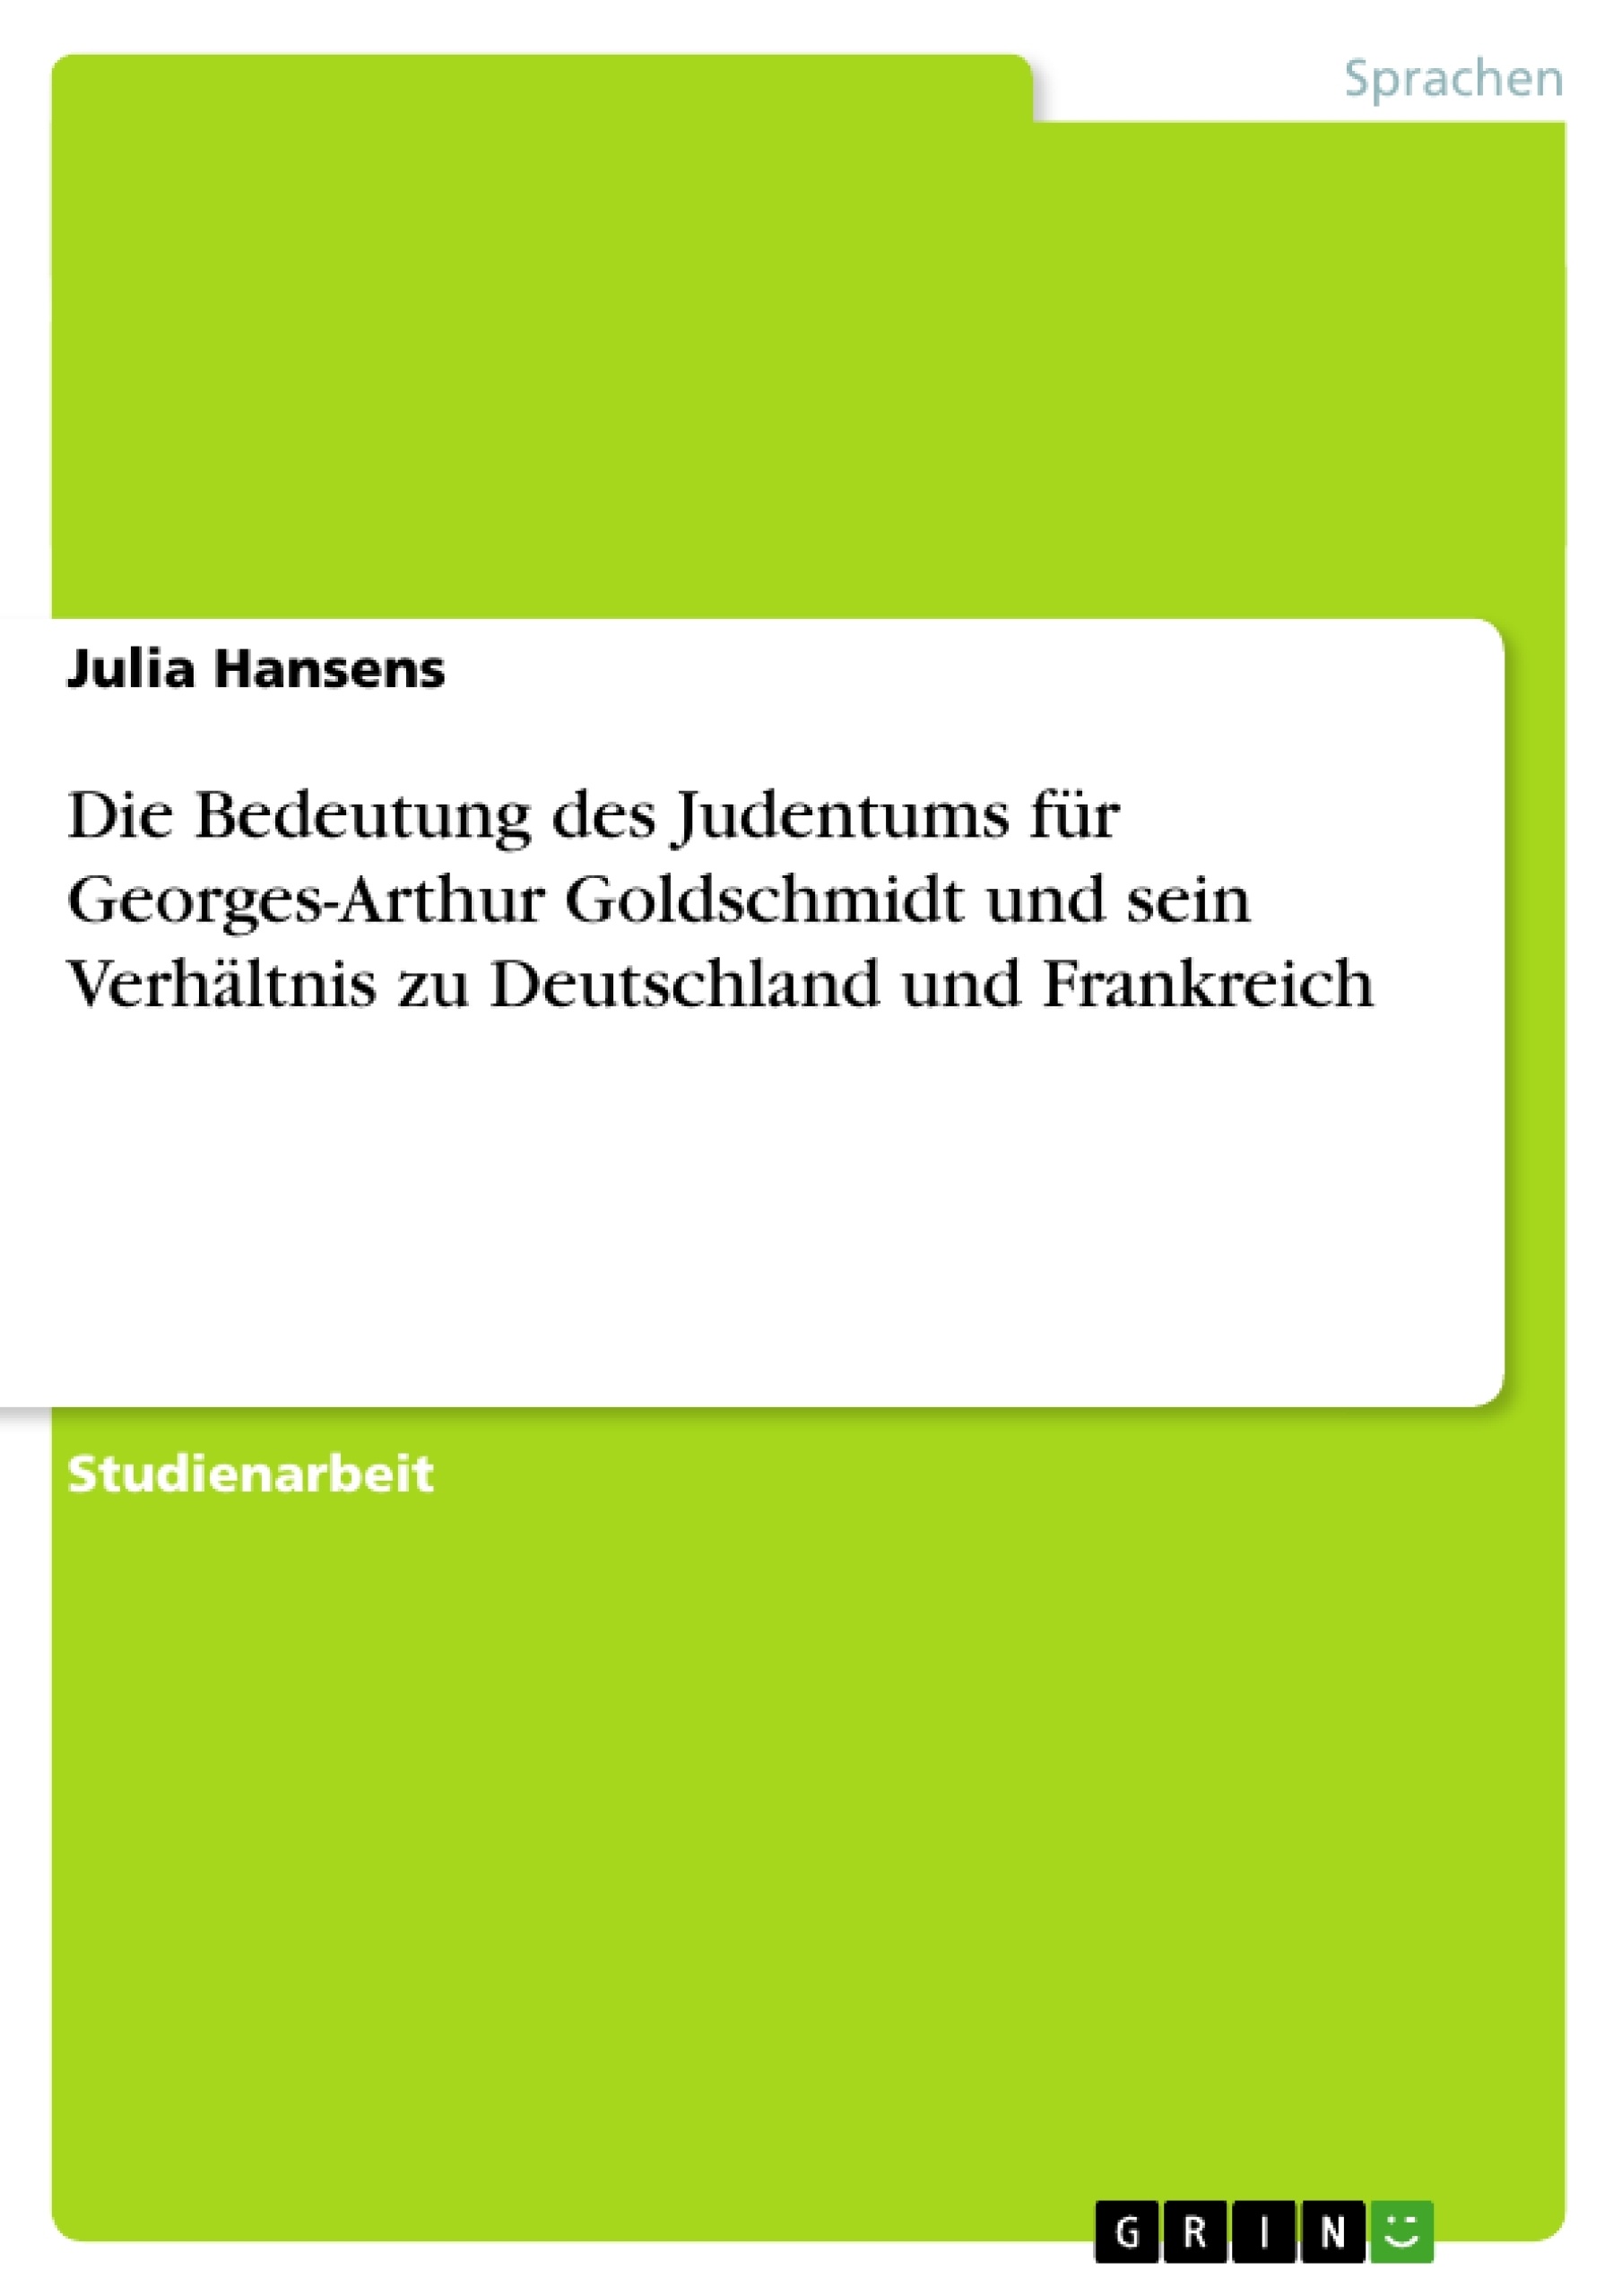 Título: Die Bedeutung des Judentums für Georges-Arthur Goldschmidt und sein Verhältnis zu Deutschland und Frankreich